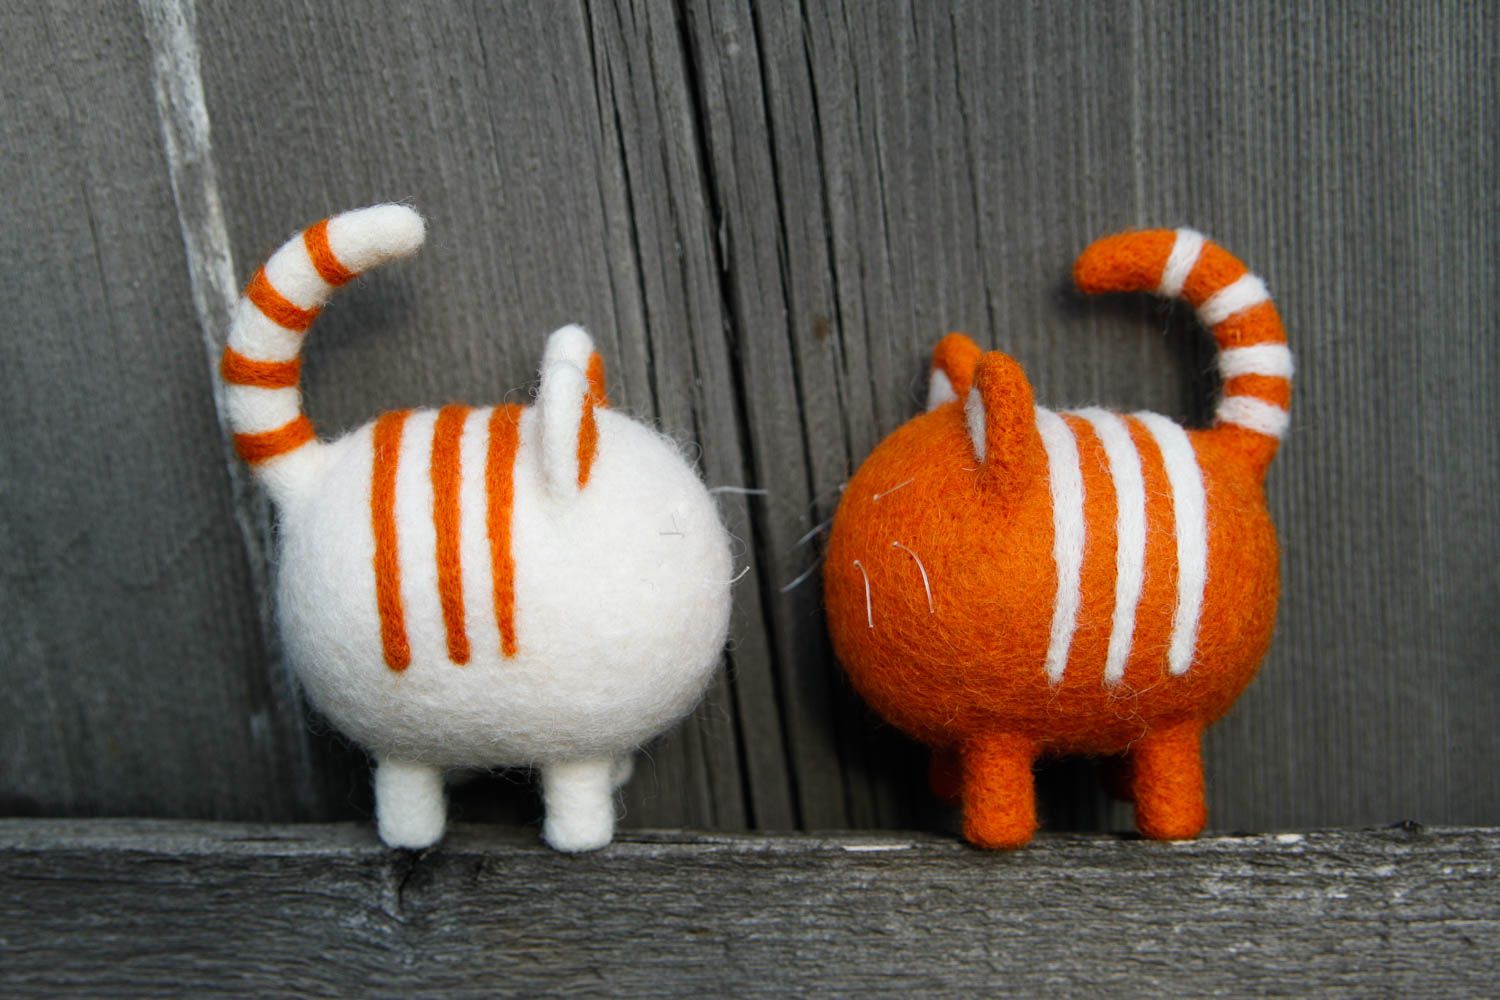 Juguetes artesanales con forma de gatos regalo original juguetes decorativos foto 1